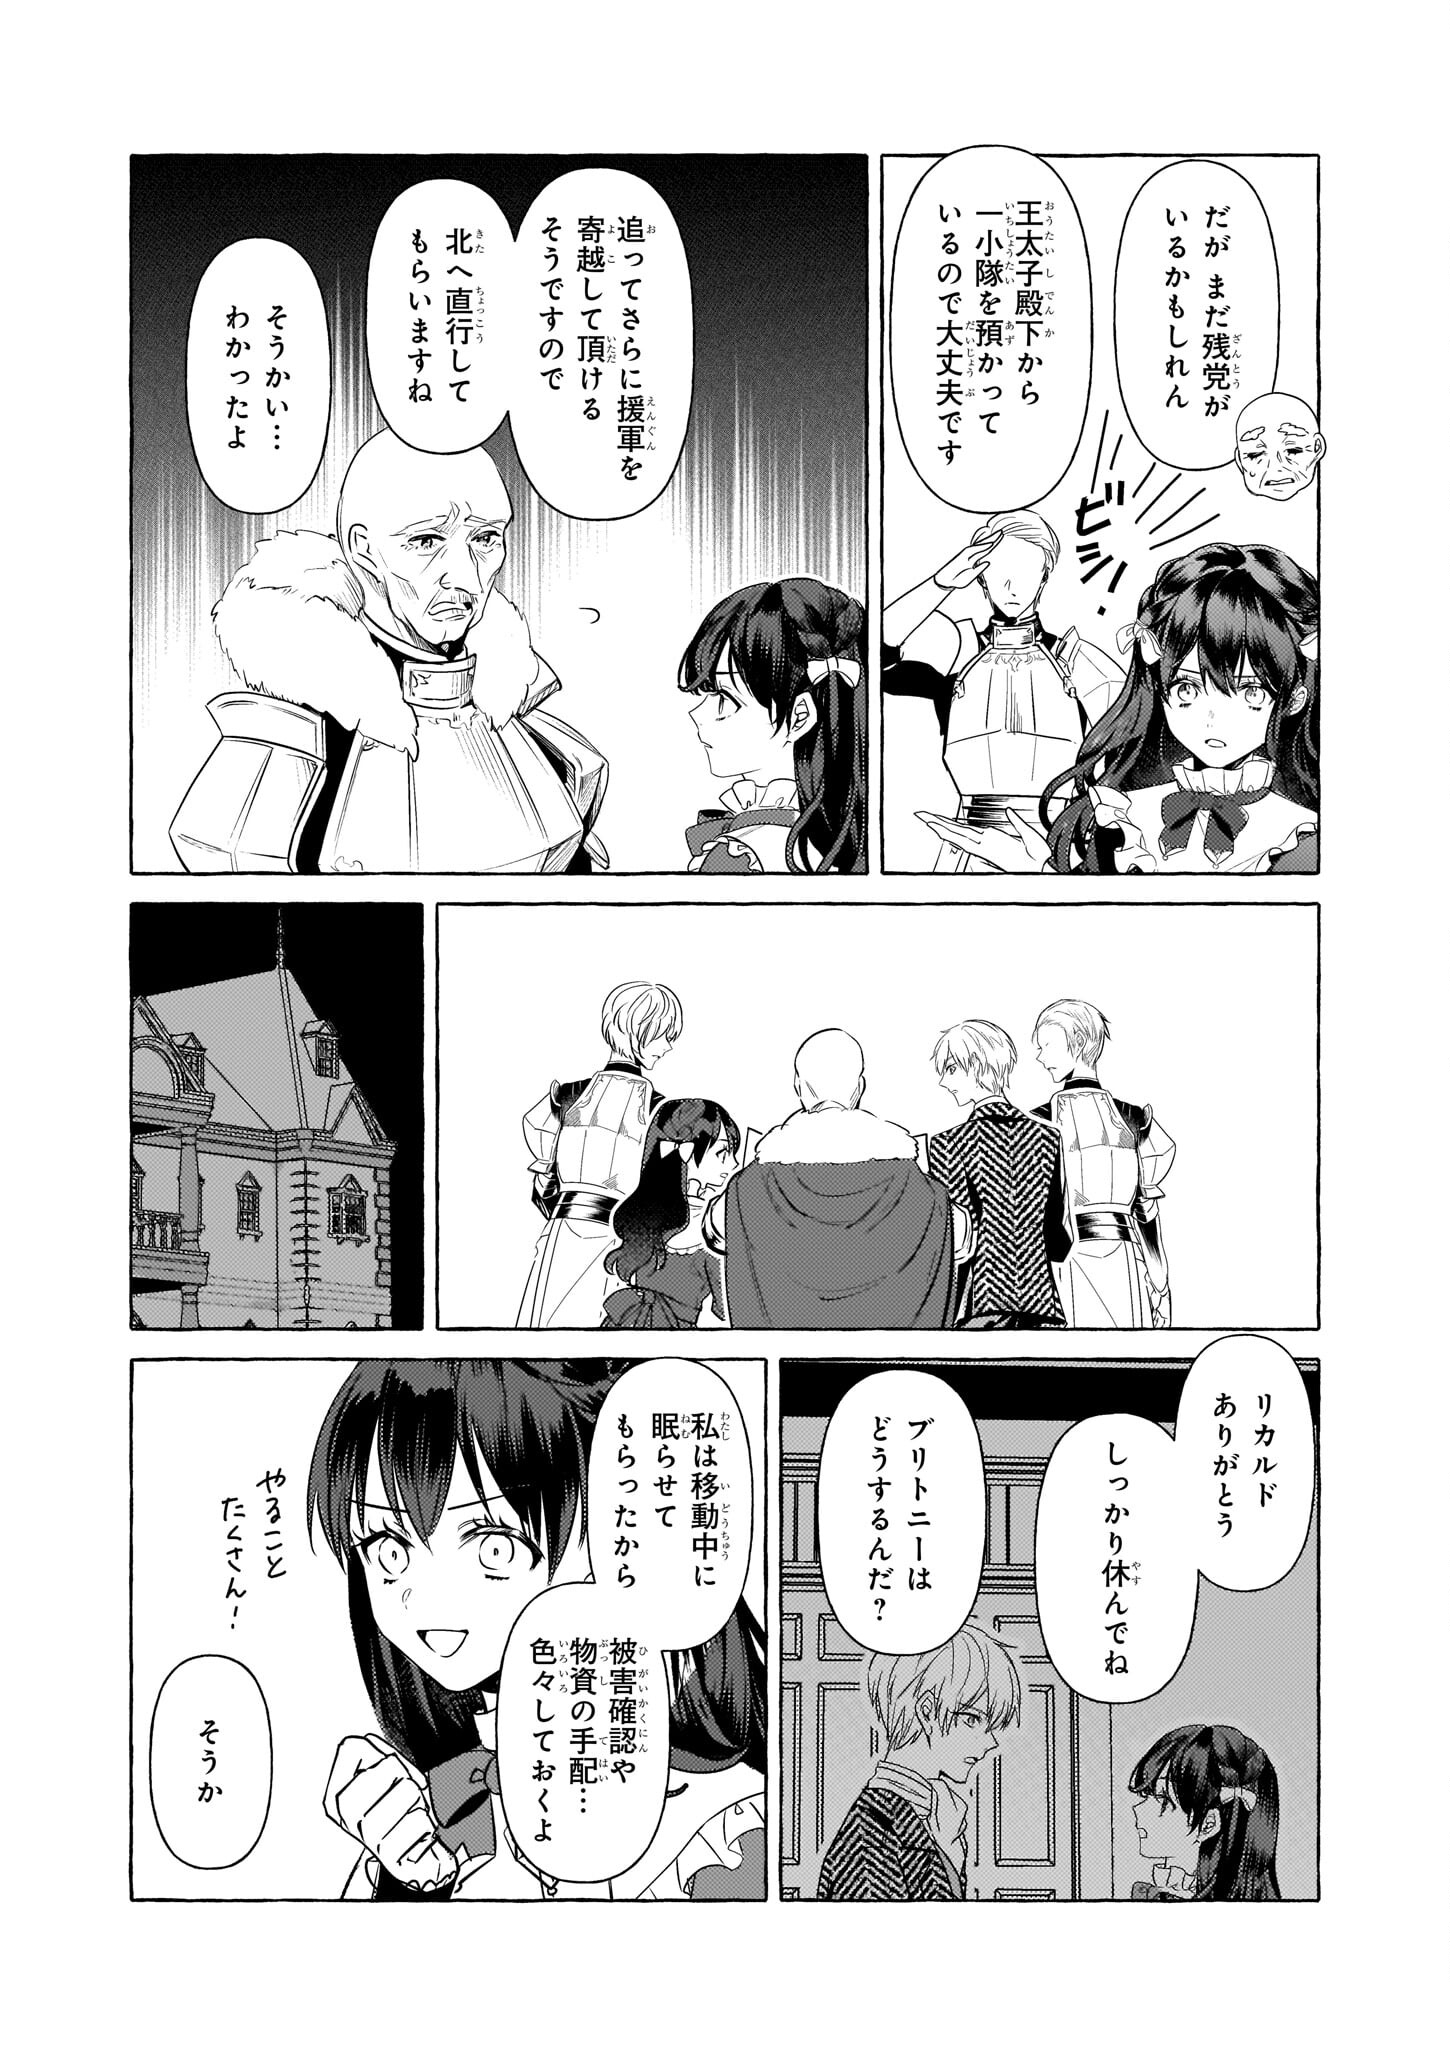 Tenseisaki ga Shoujo Manga no Shirobuta Reijou datta reBoooot! - Chapter 21 - Page 2